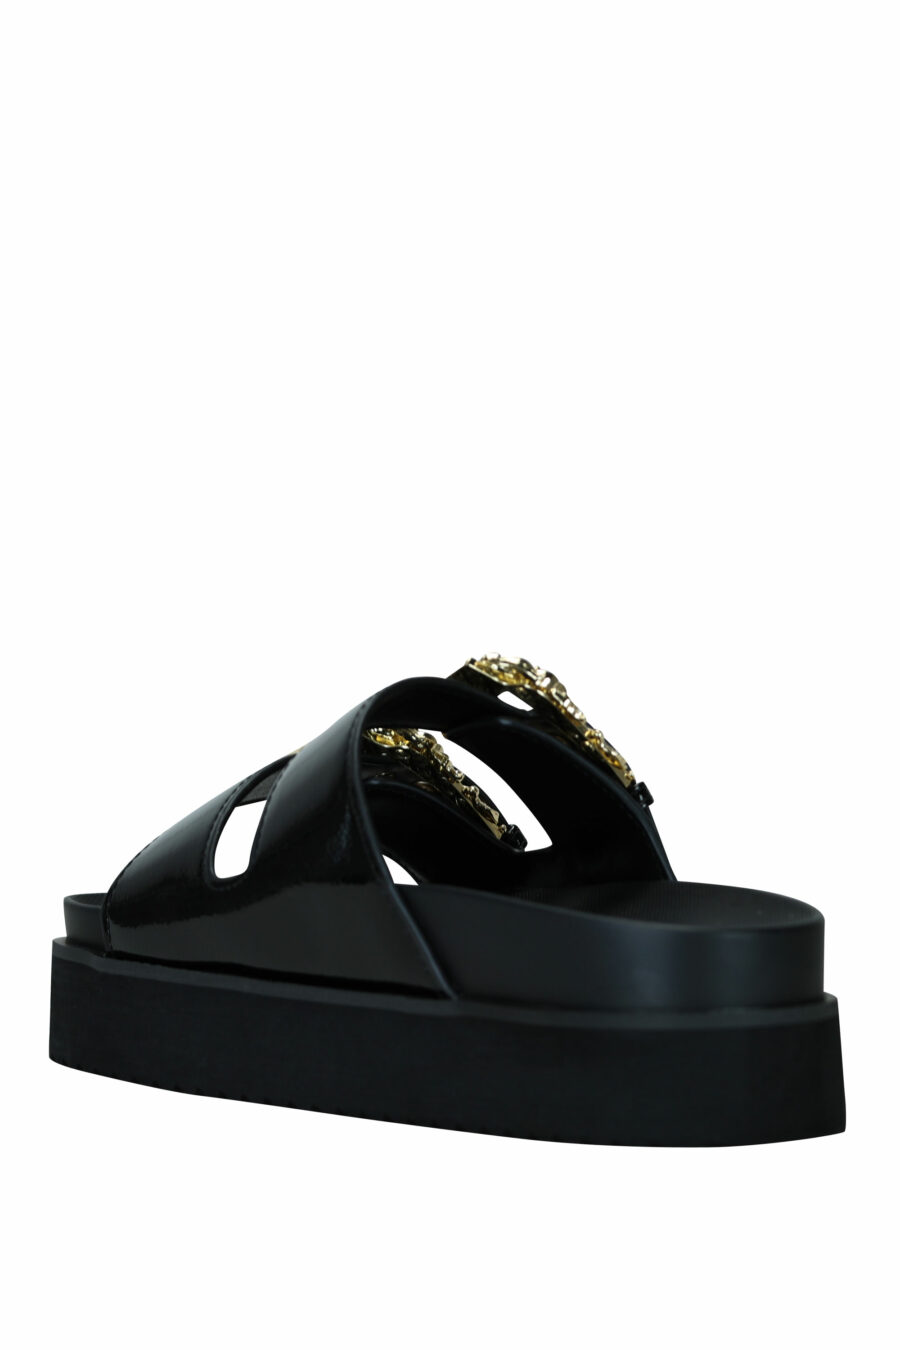 Sandálias pretas com fivela dupla barroca dourada - 8052019607253 4